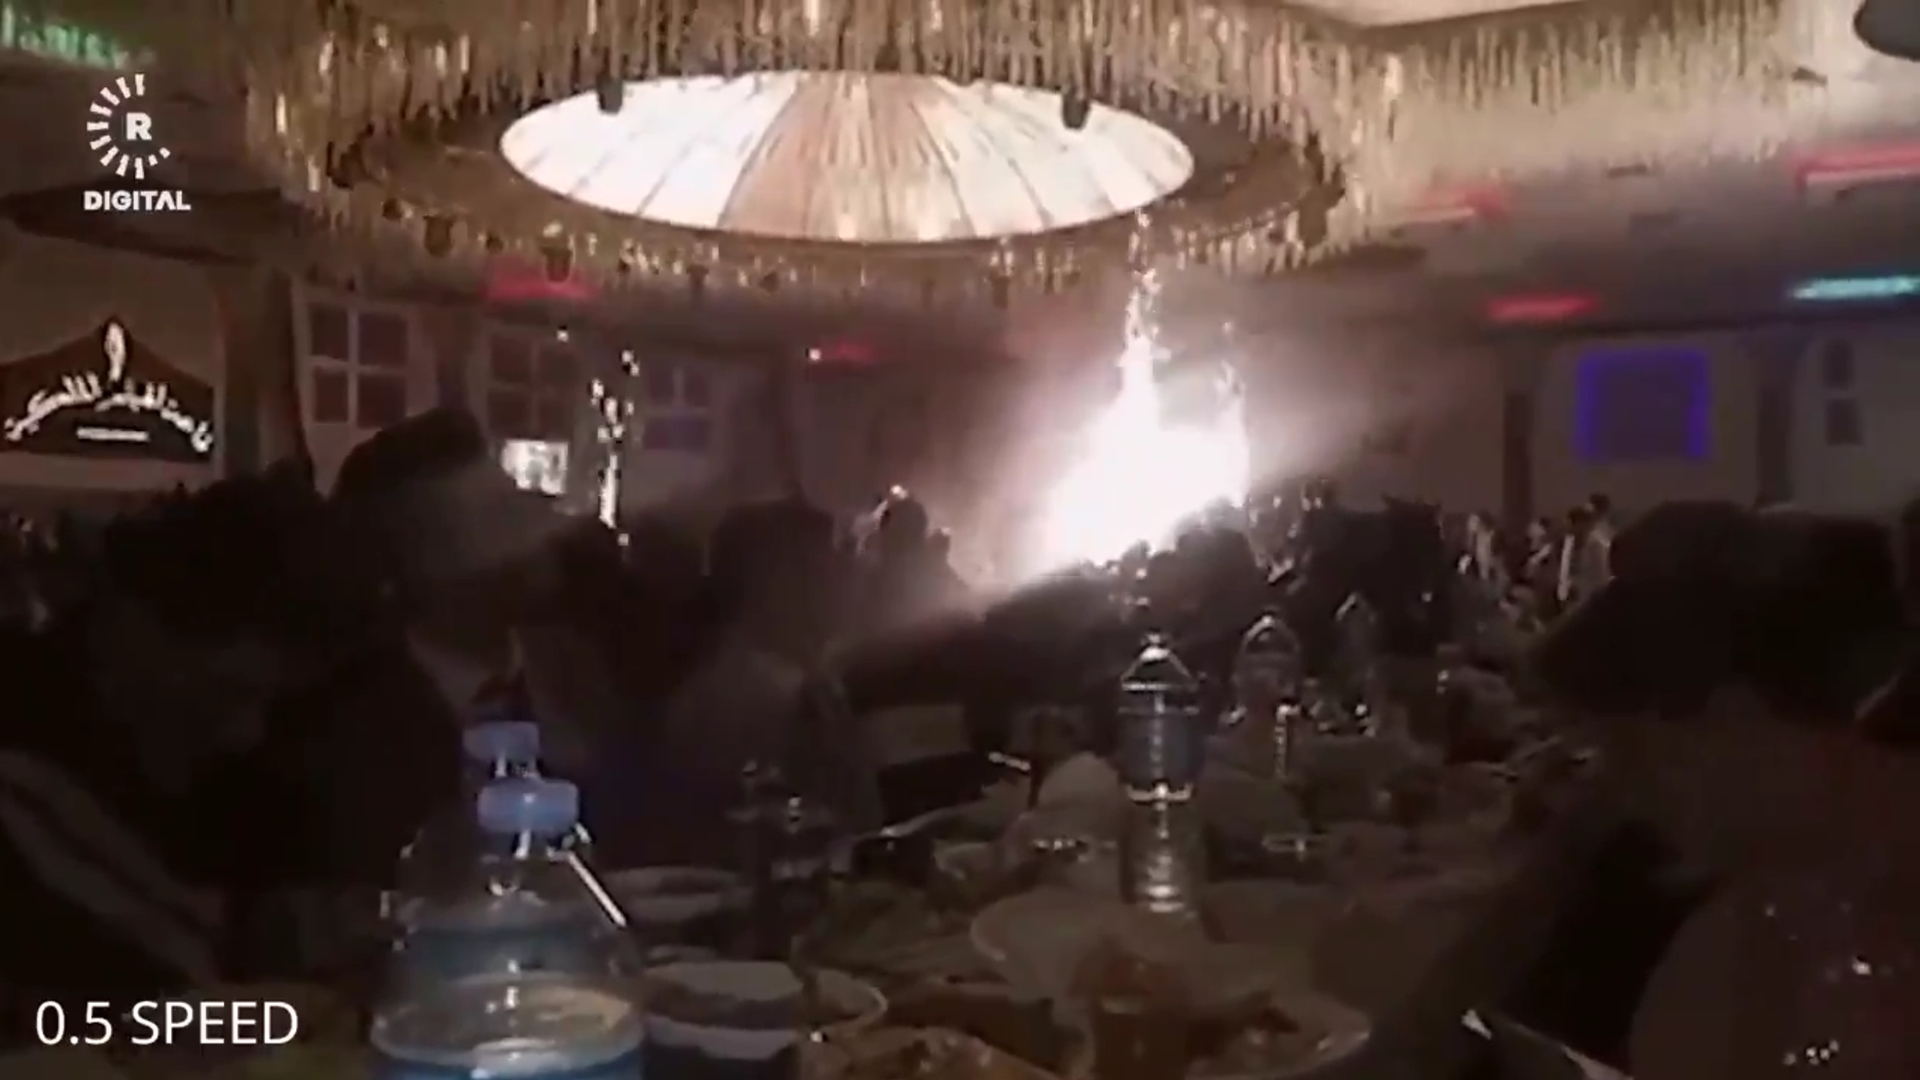 Ιράκ: Νέο βίντεο δείχνει τη στιγμή που ξεσπά η φωτιά στον ματωμένο γάμο – Τουλάχιστον 114 νεκροί